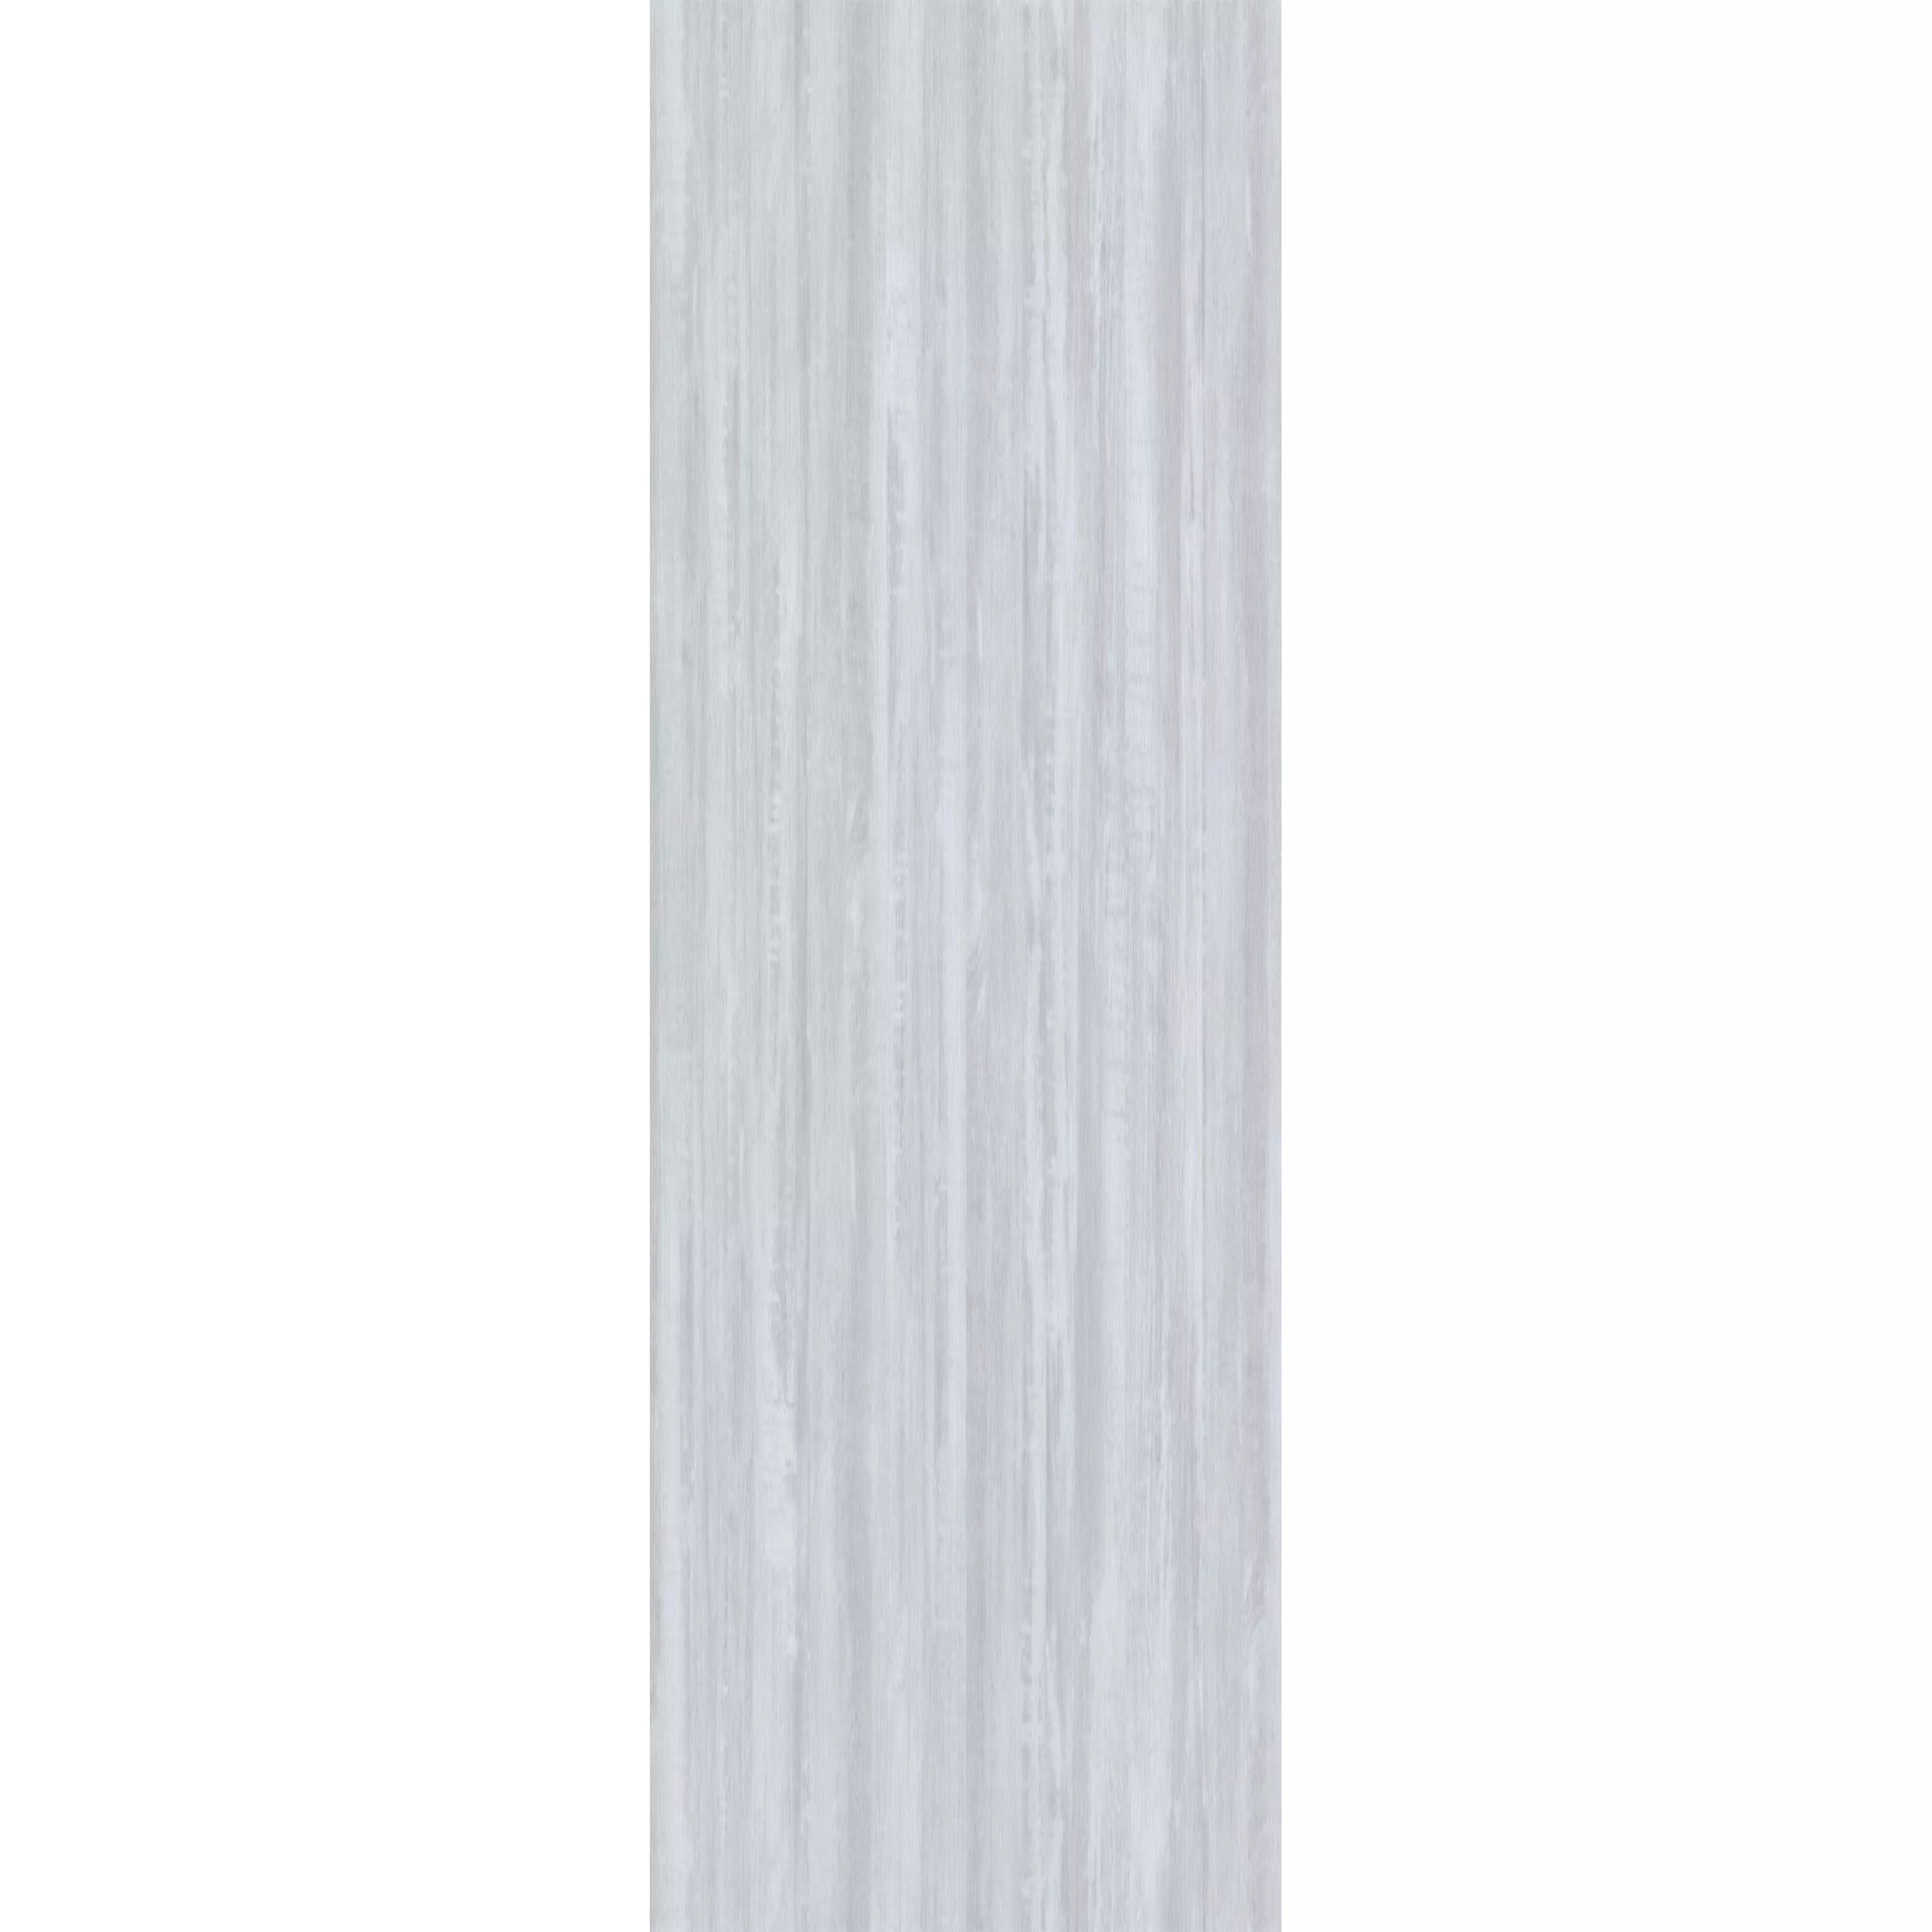 Płytki podłogowe winylowe Systemem Kliknięć Snowwood Biały 17,2x121cm